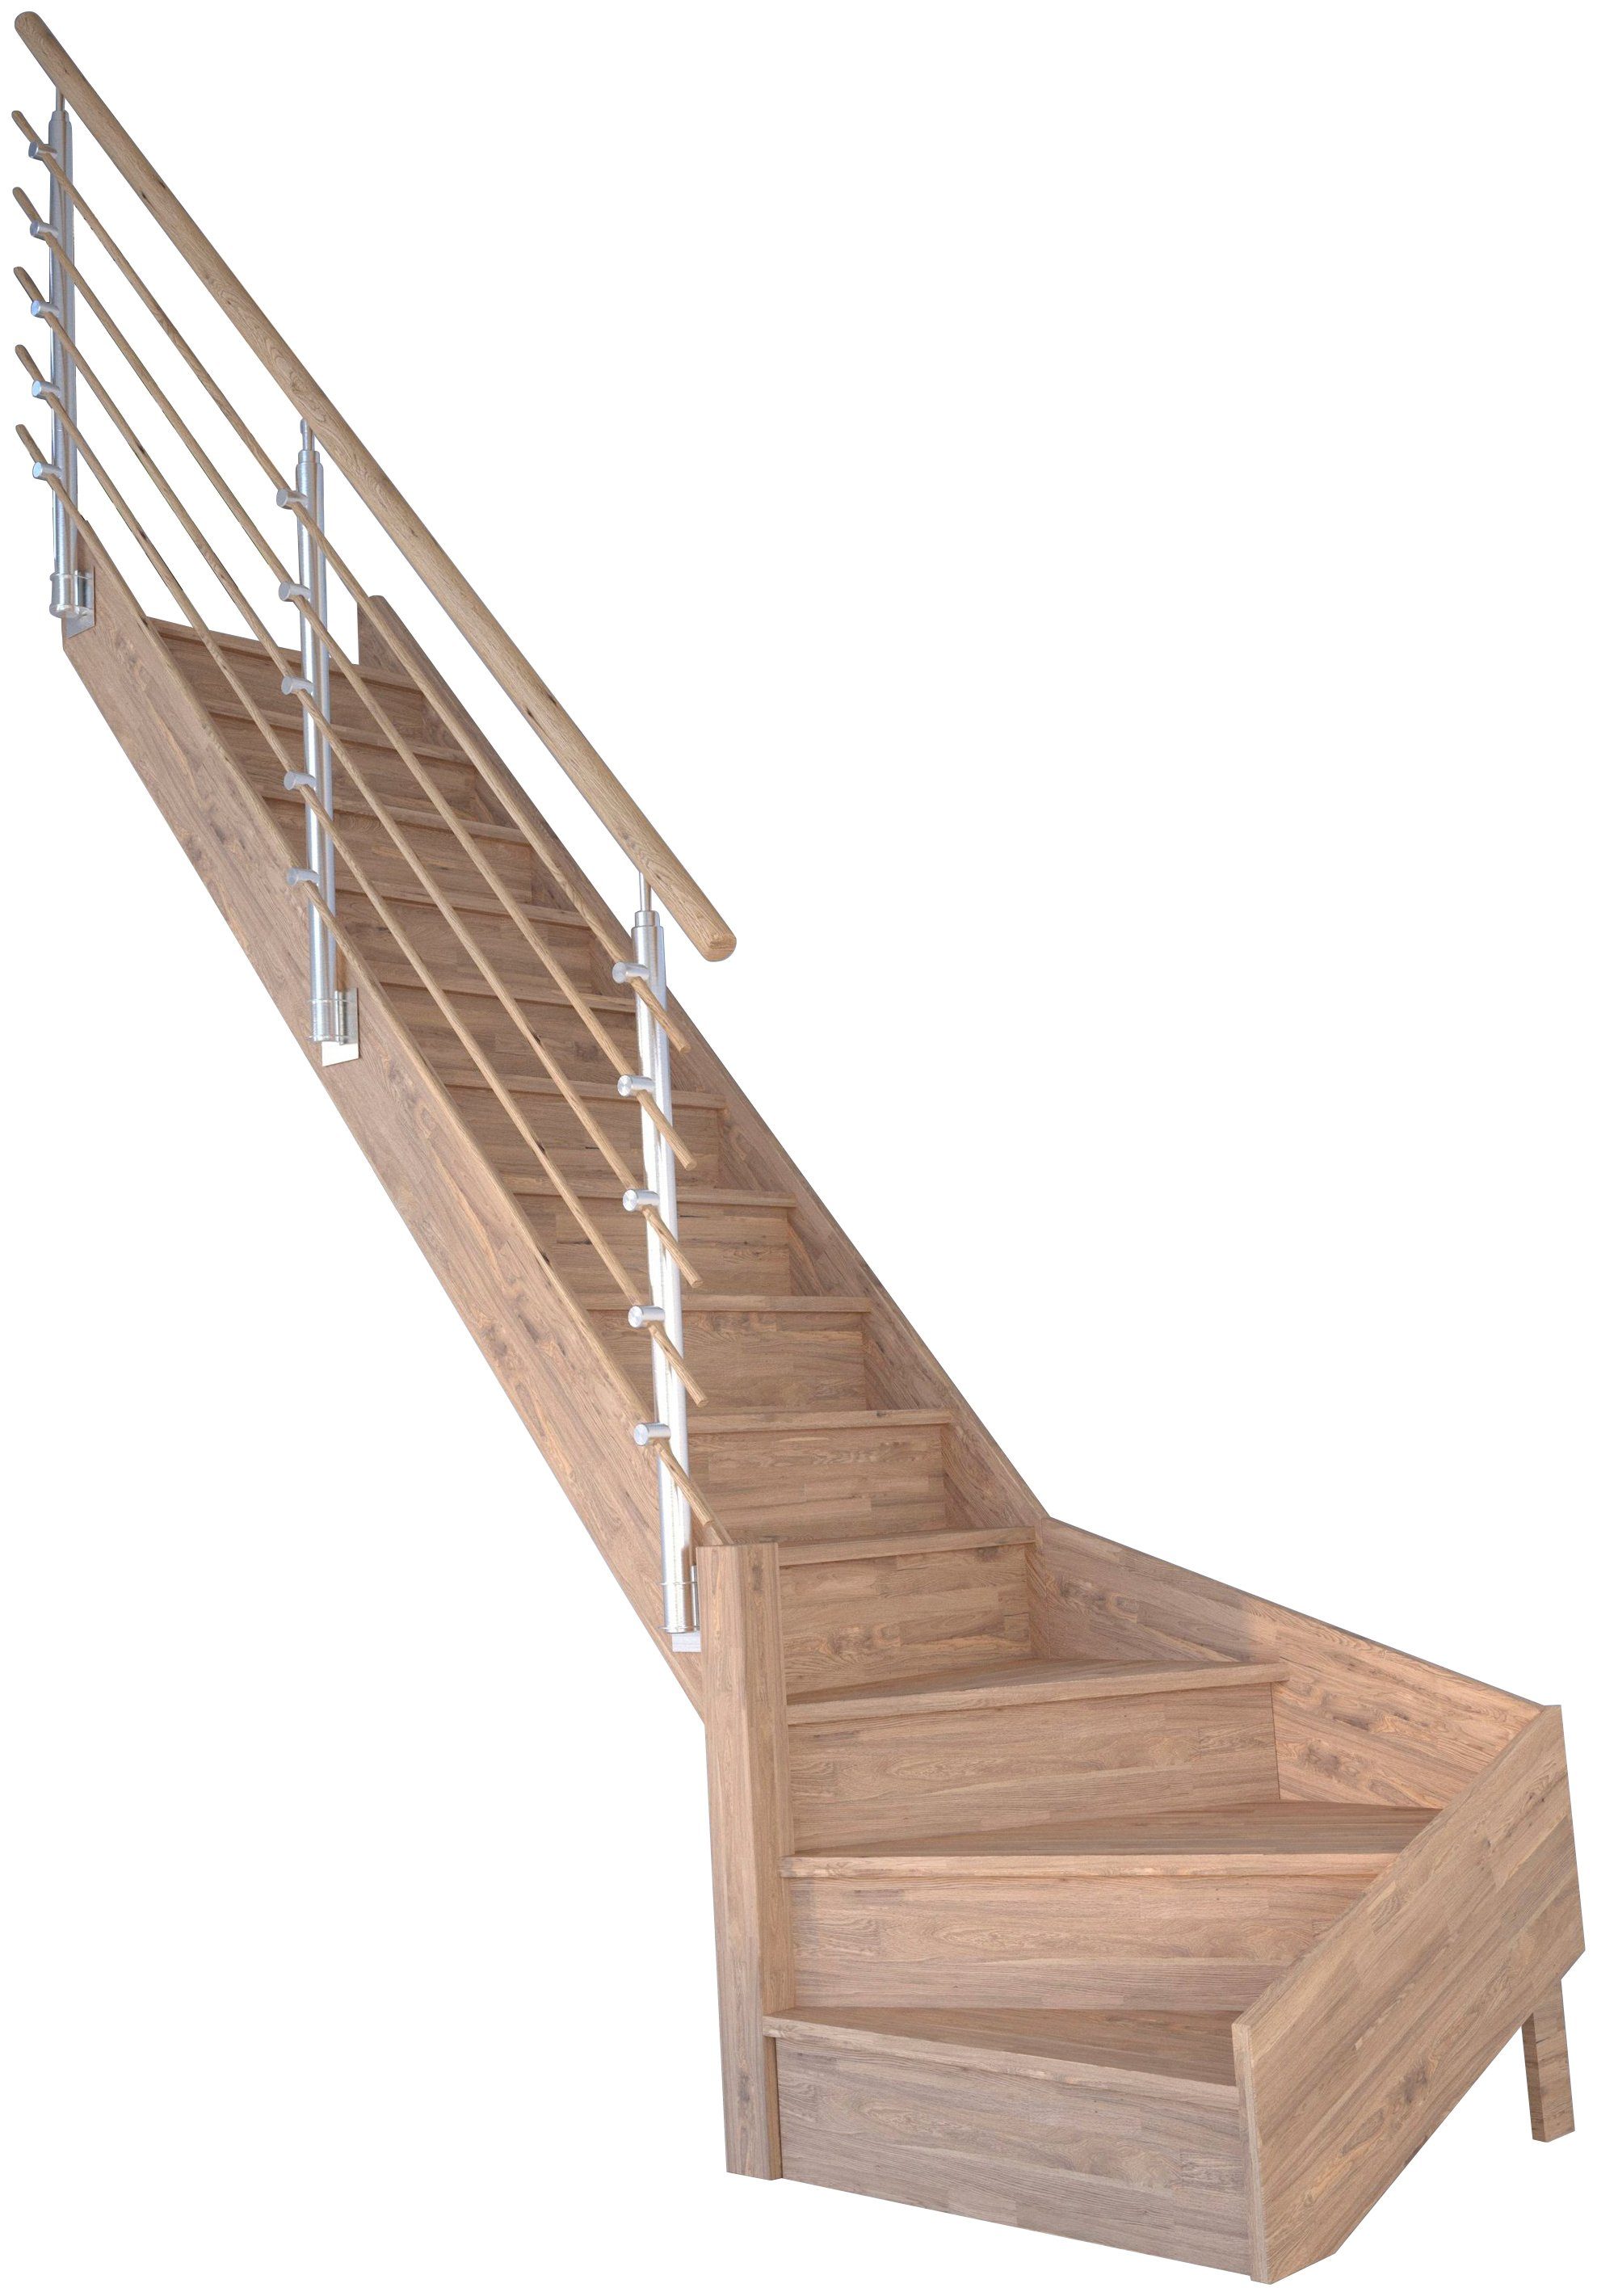 Starwood Raumspartreppe Massivholz Rhodos, Design-Geländer Holzrundstäbe, für Geschosshöhen bis 300 cm, Stufen geschlossen, gewendelt Links, Durchgehende Wangenteile